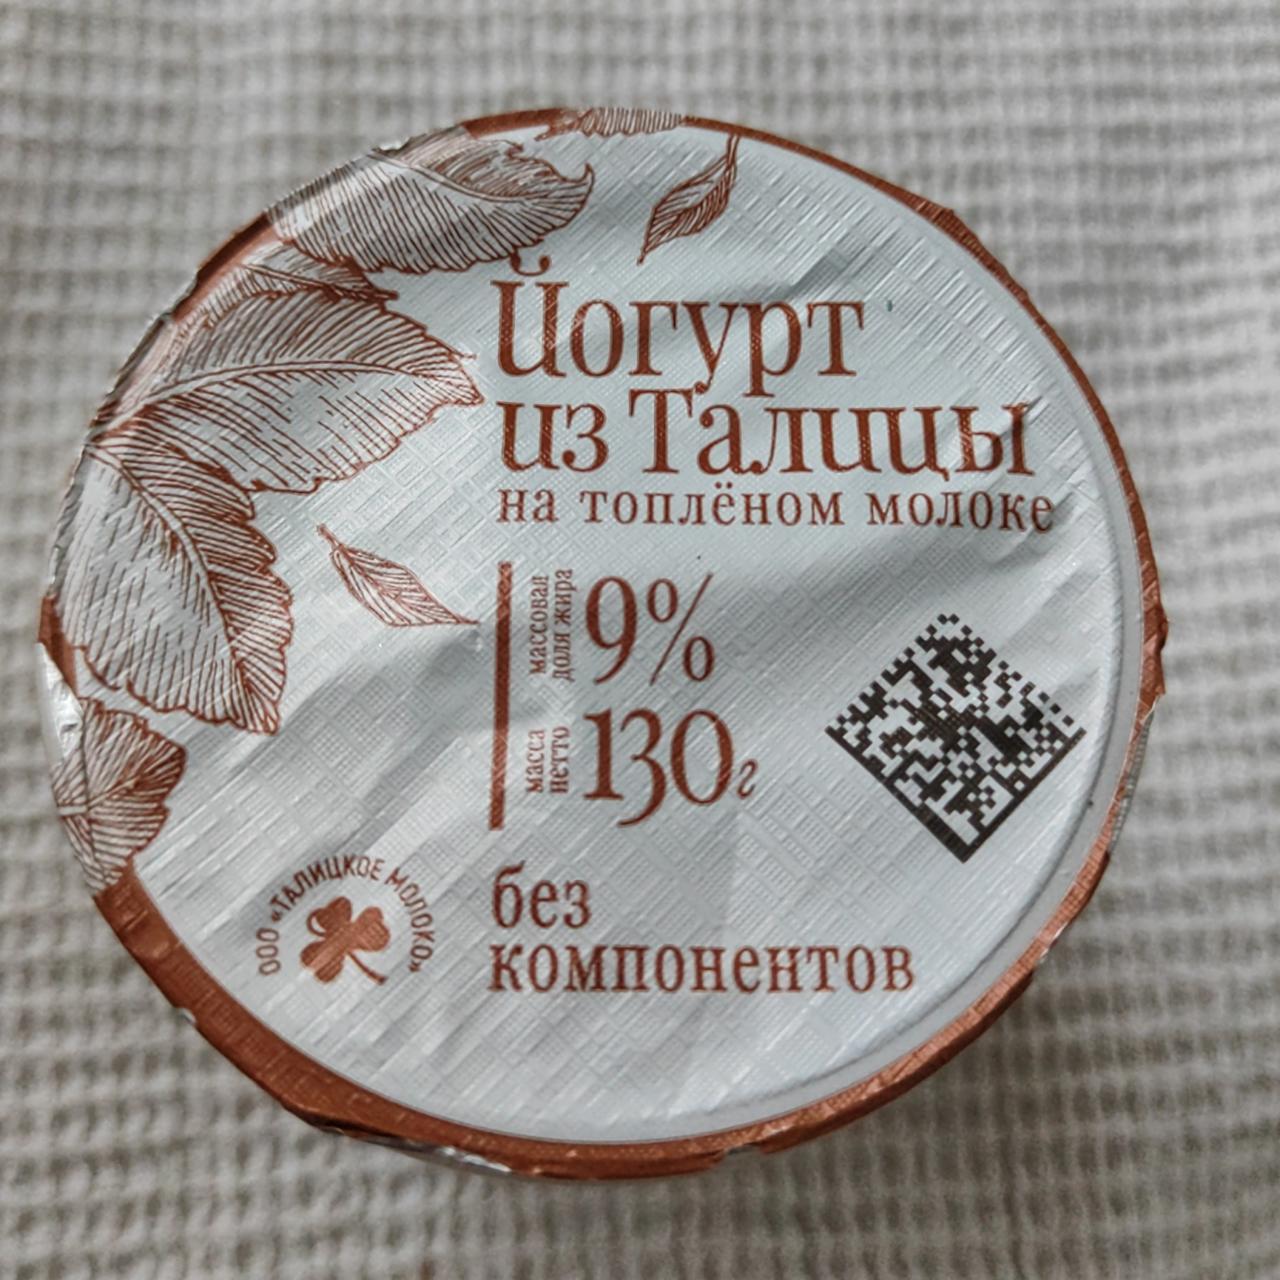 Фото - Йогурт на топлёном молоке без компонентов из Талицы